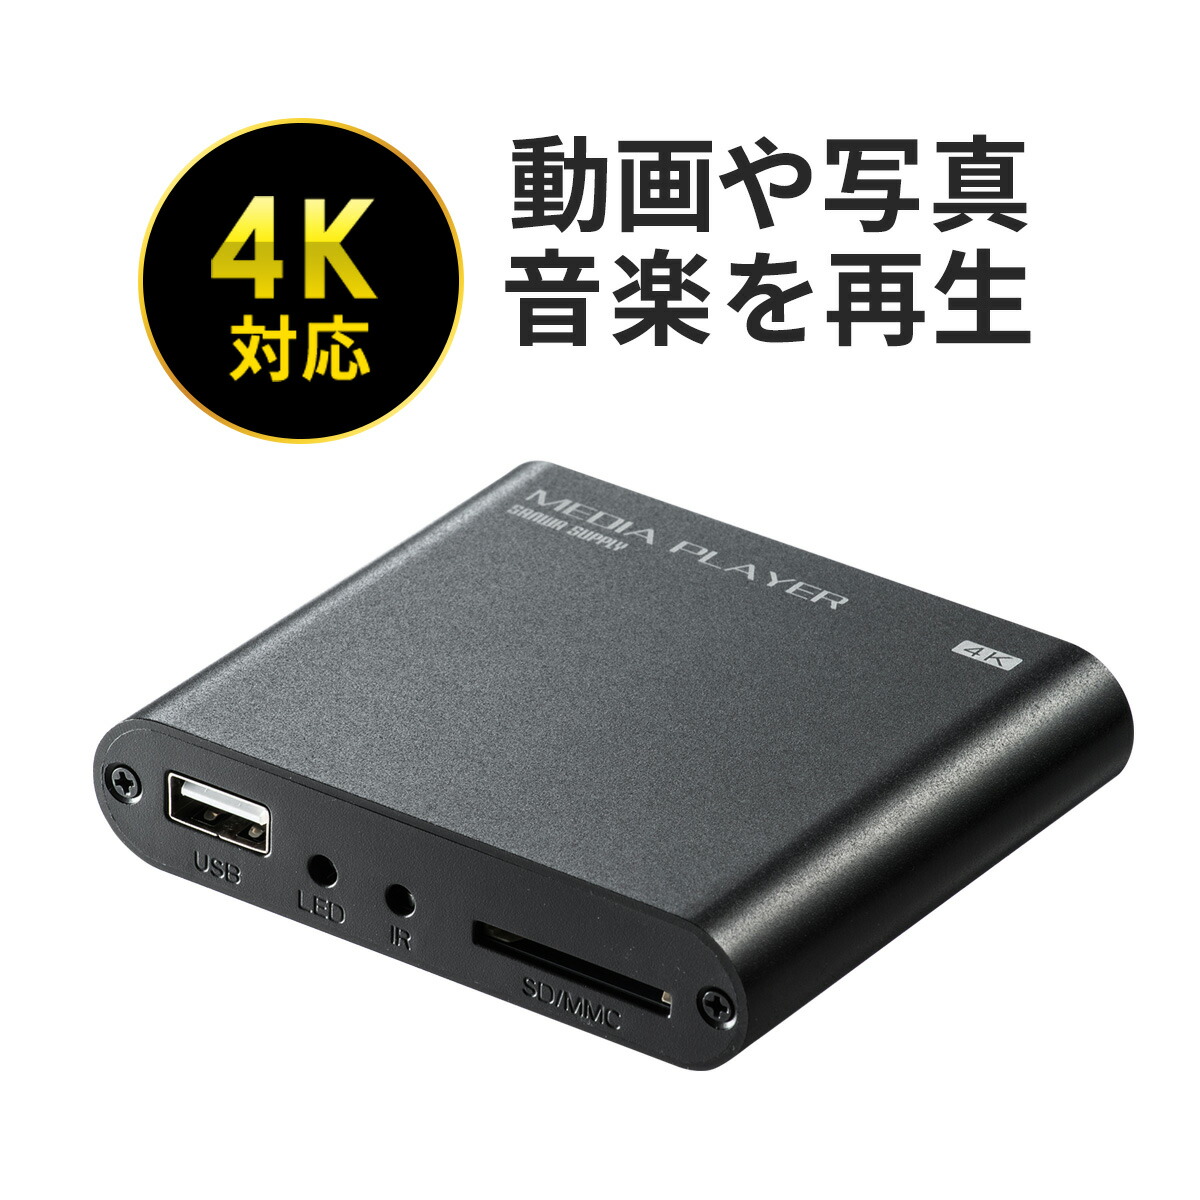 400-MEDI023 新色 サンワダイレクト限定品 送料無料 4K対応メディアプレーヤー HDMI RCA接続 SDカード USBメモリ対応 コンパクト 動画 テレビ出力 小型 音楽 画像 写真 4K 蔵 ポータブル